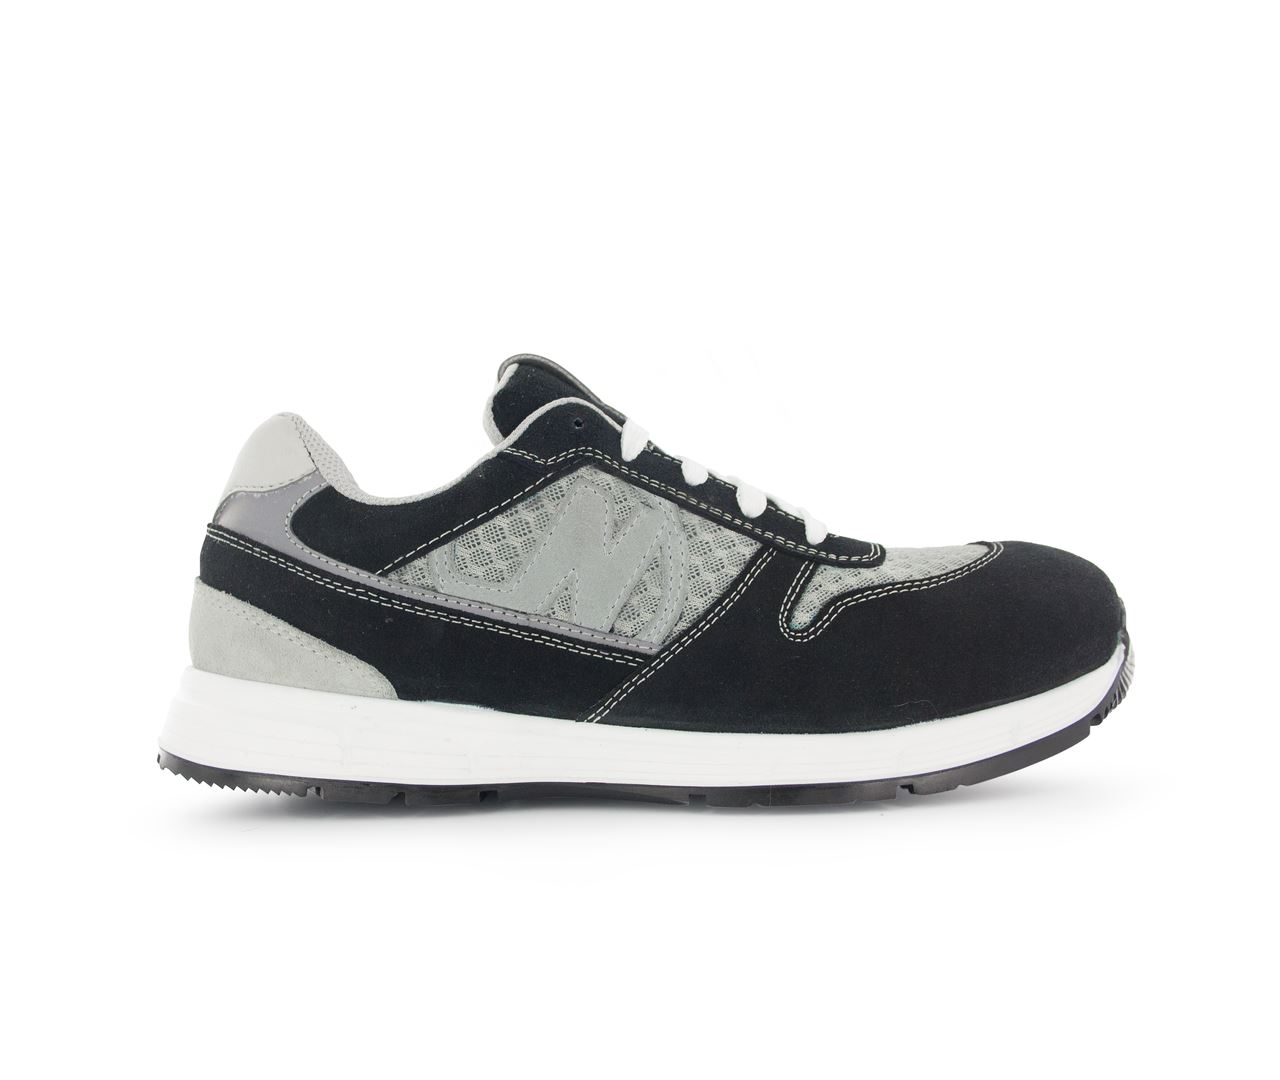 Chaussure de sécurité noir/gris Run Soft T.40 - Nord'Ways - RUN000240000NOGR